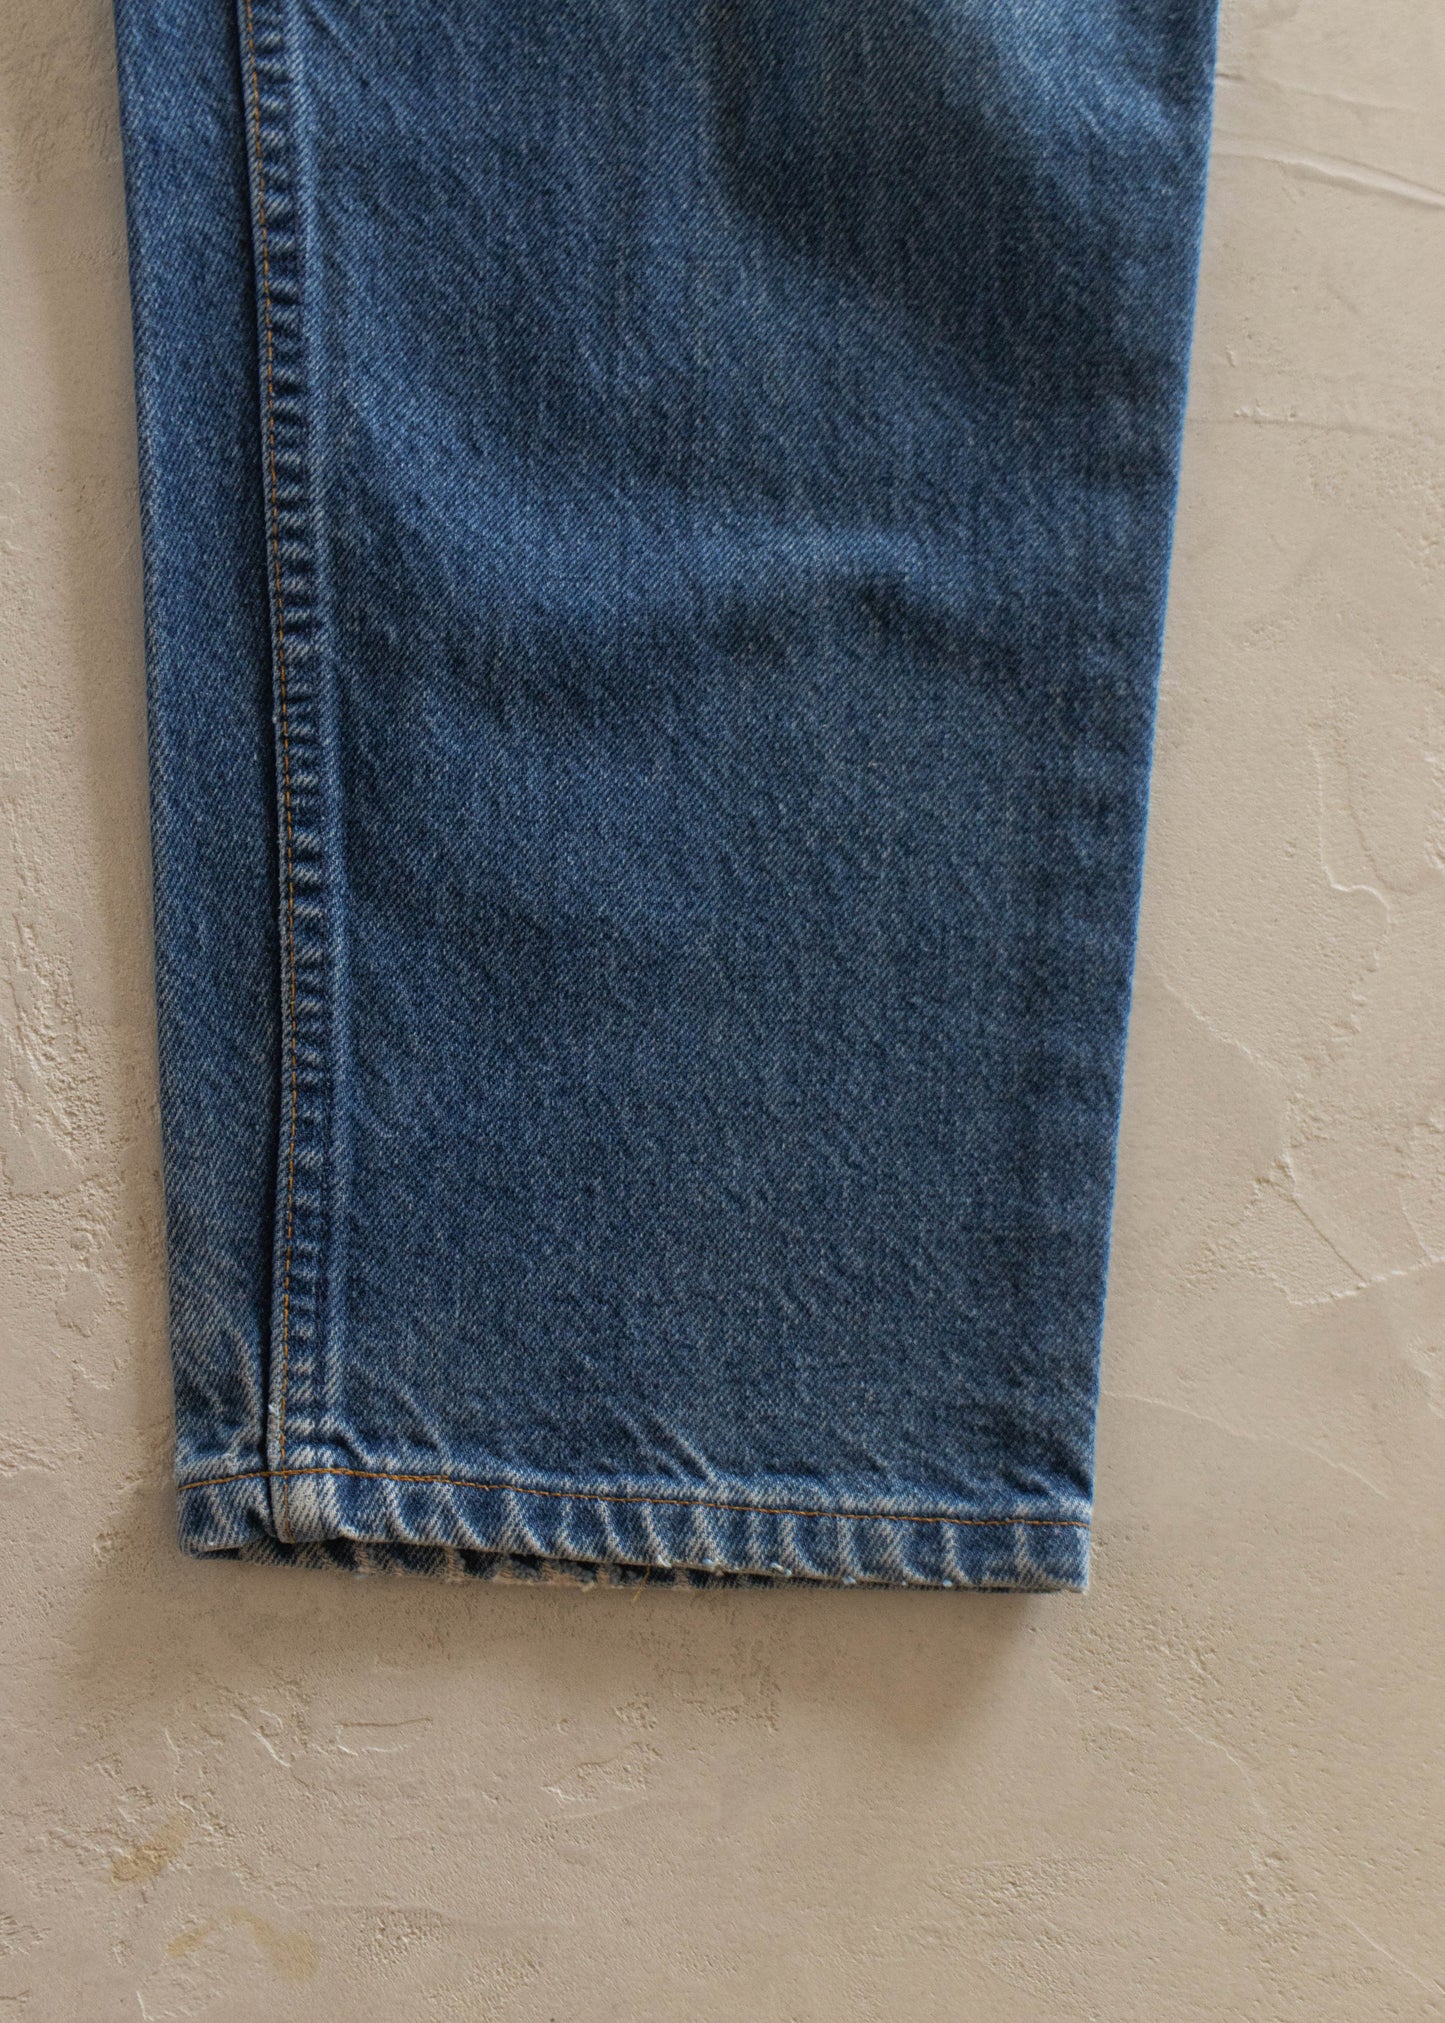 1980s Levi's 550 Midwash Jeans Size Women's 32 Men's 34